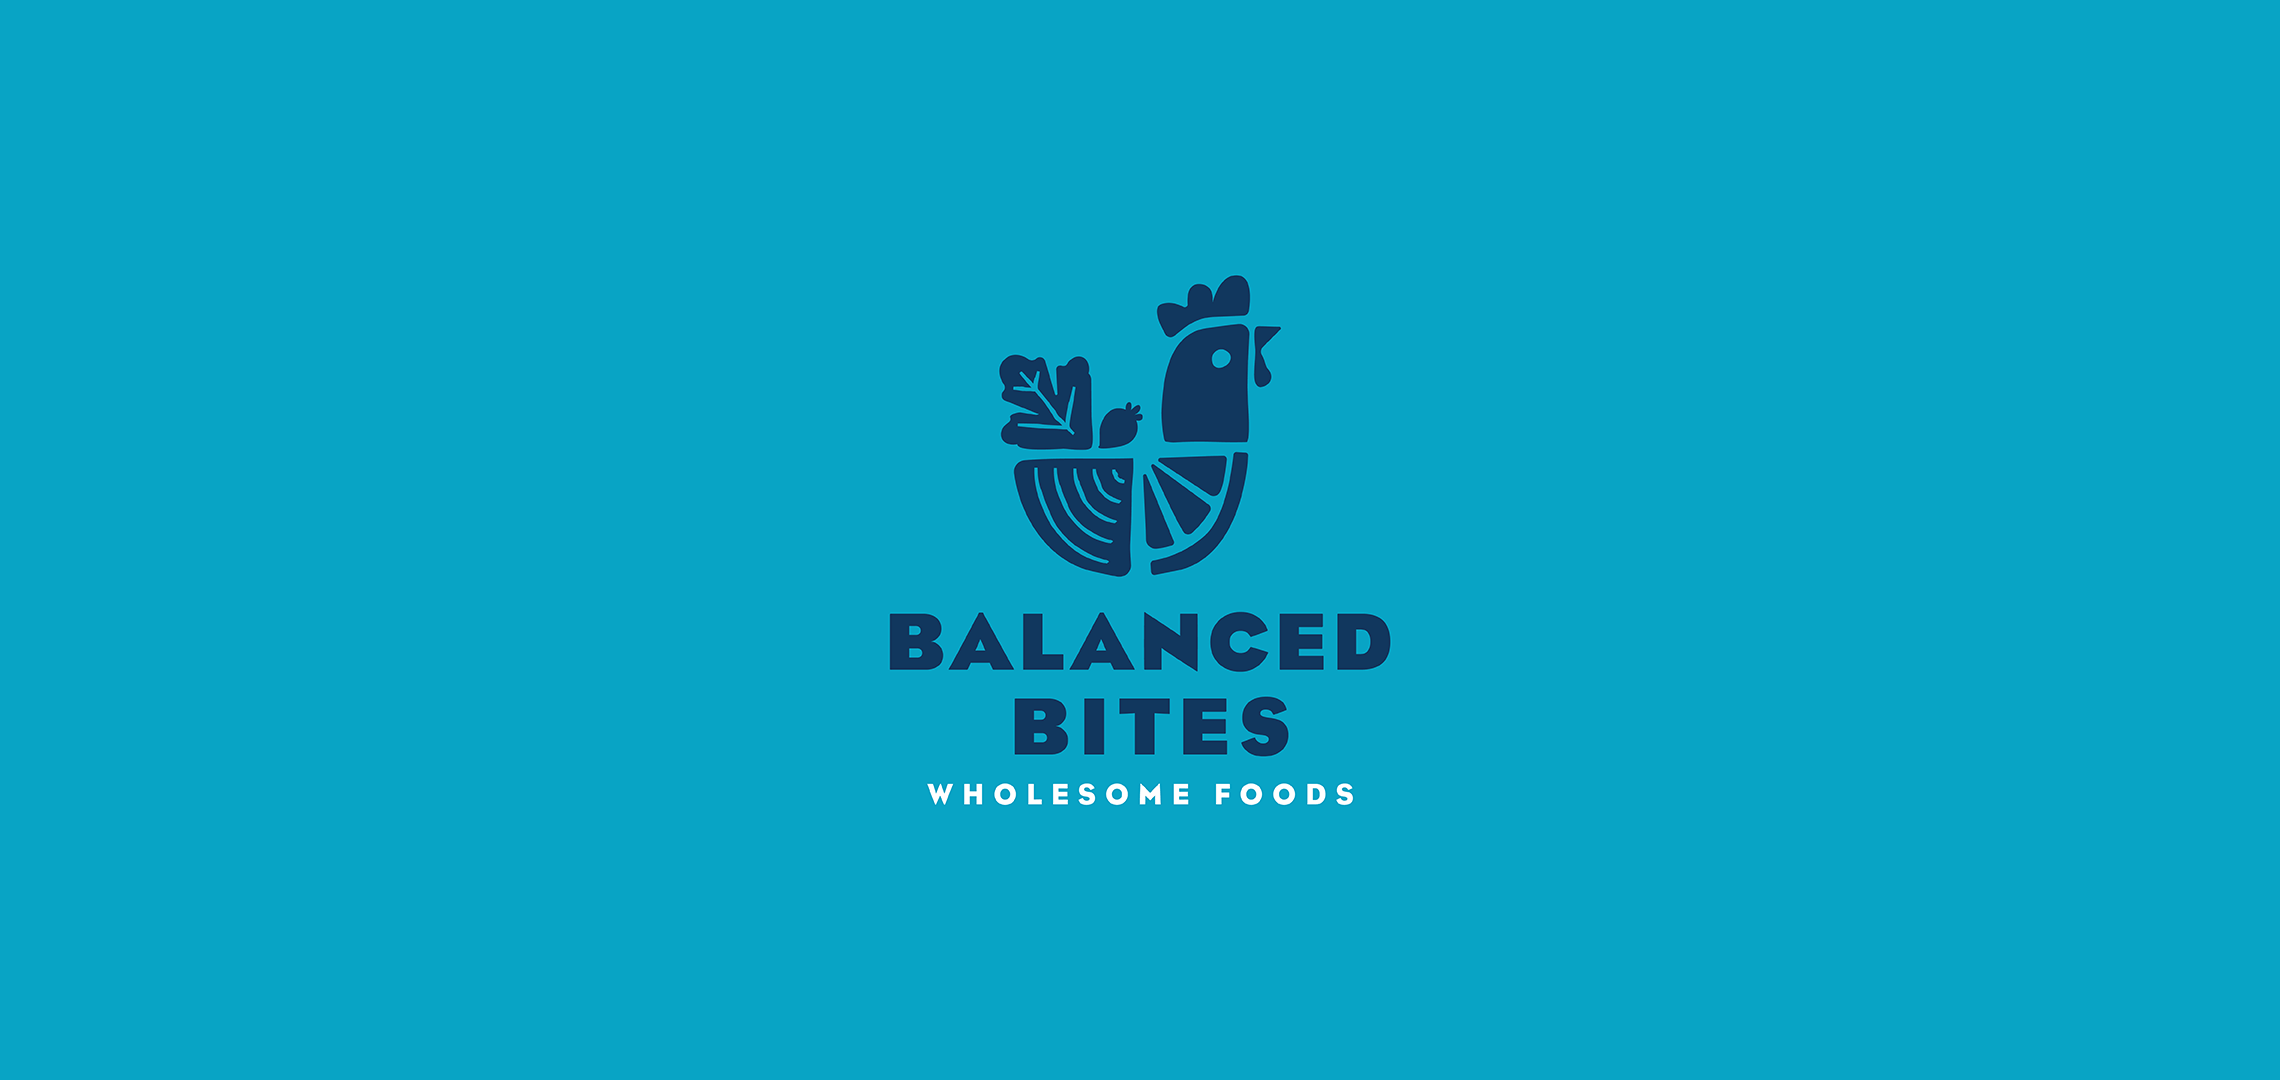 Balanced Bites logo designed by Aeolidia